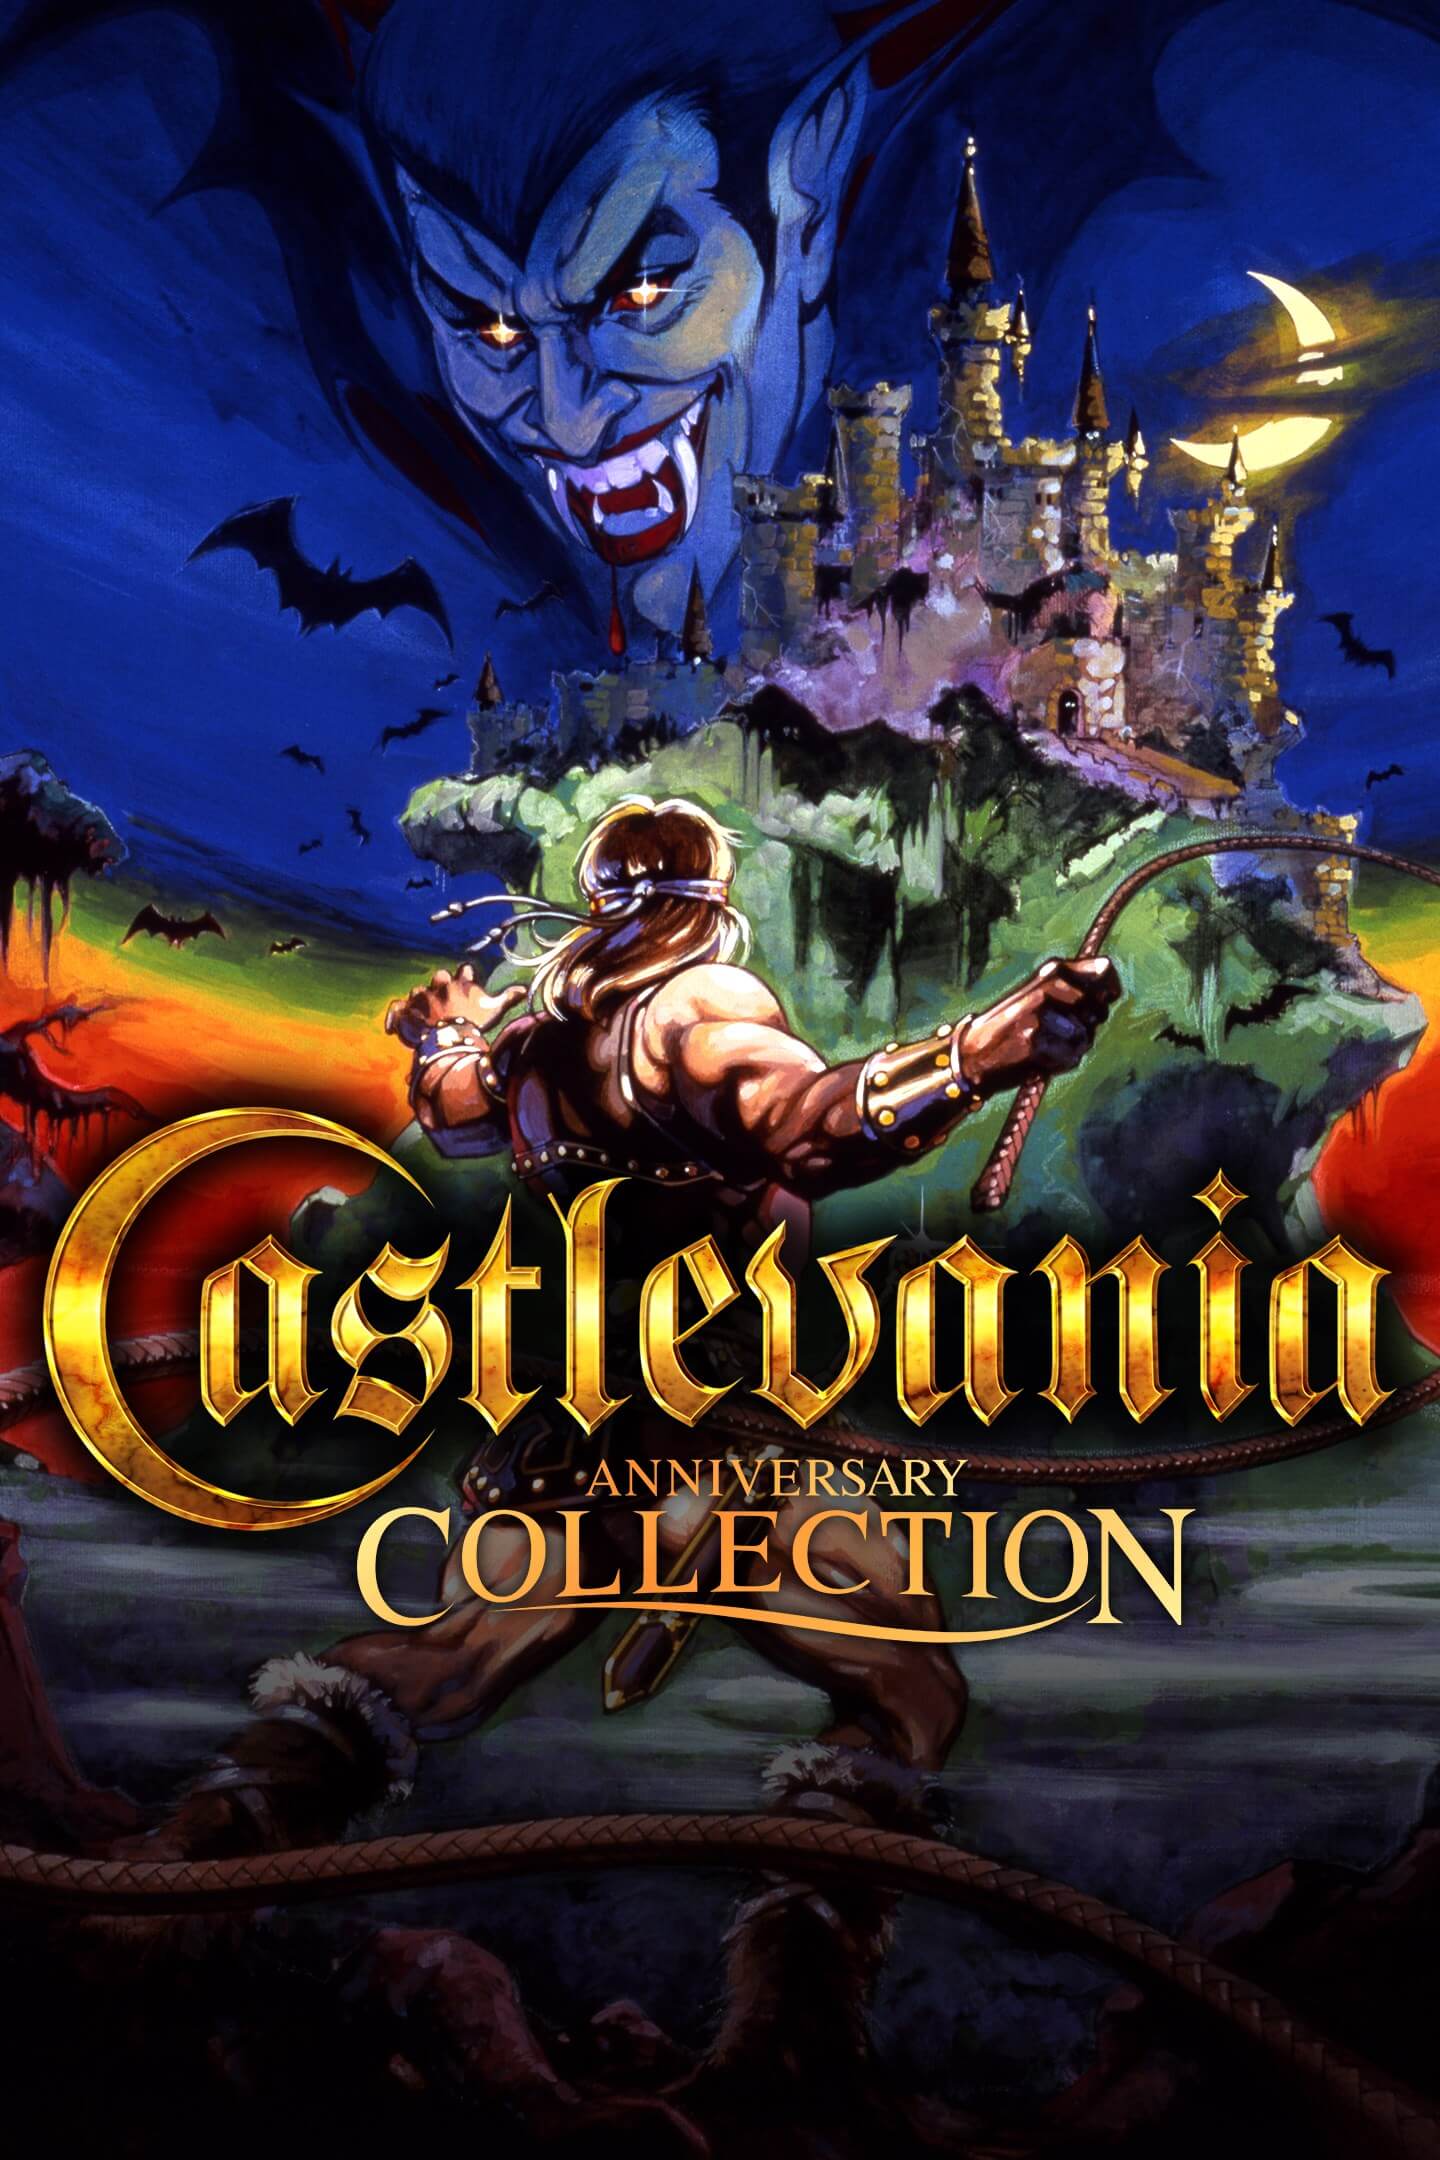 Jogo Castlevania Anniversary Collection para Xbox One - Dicas, análise e imagens | Jogorama